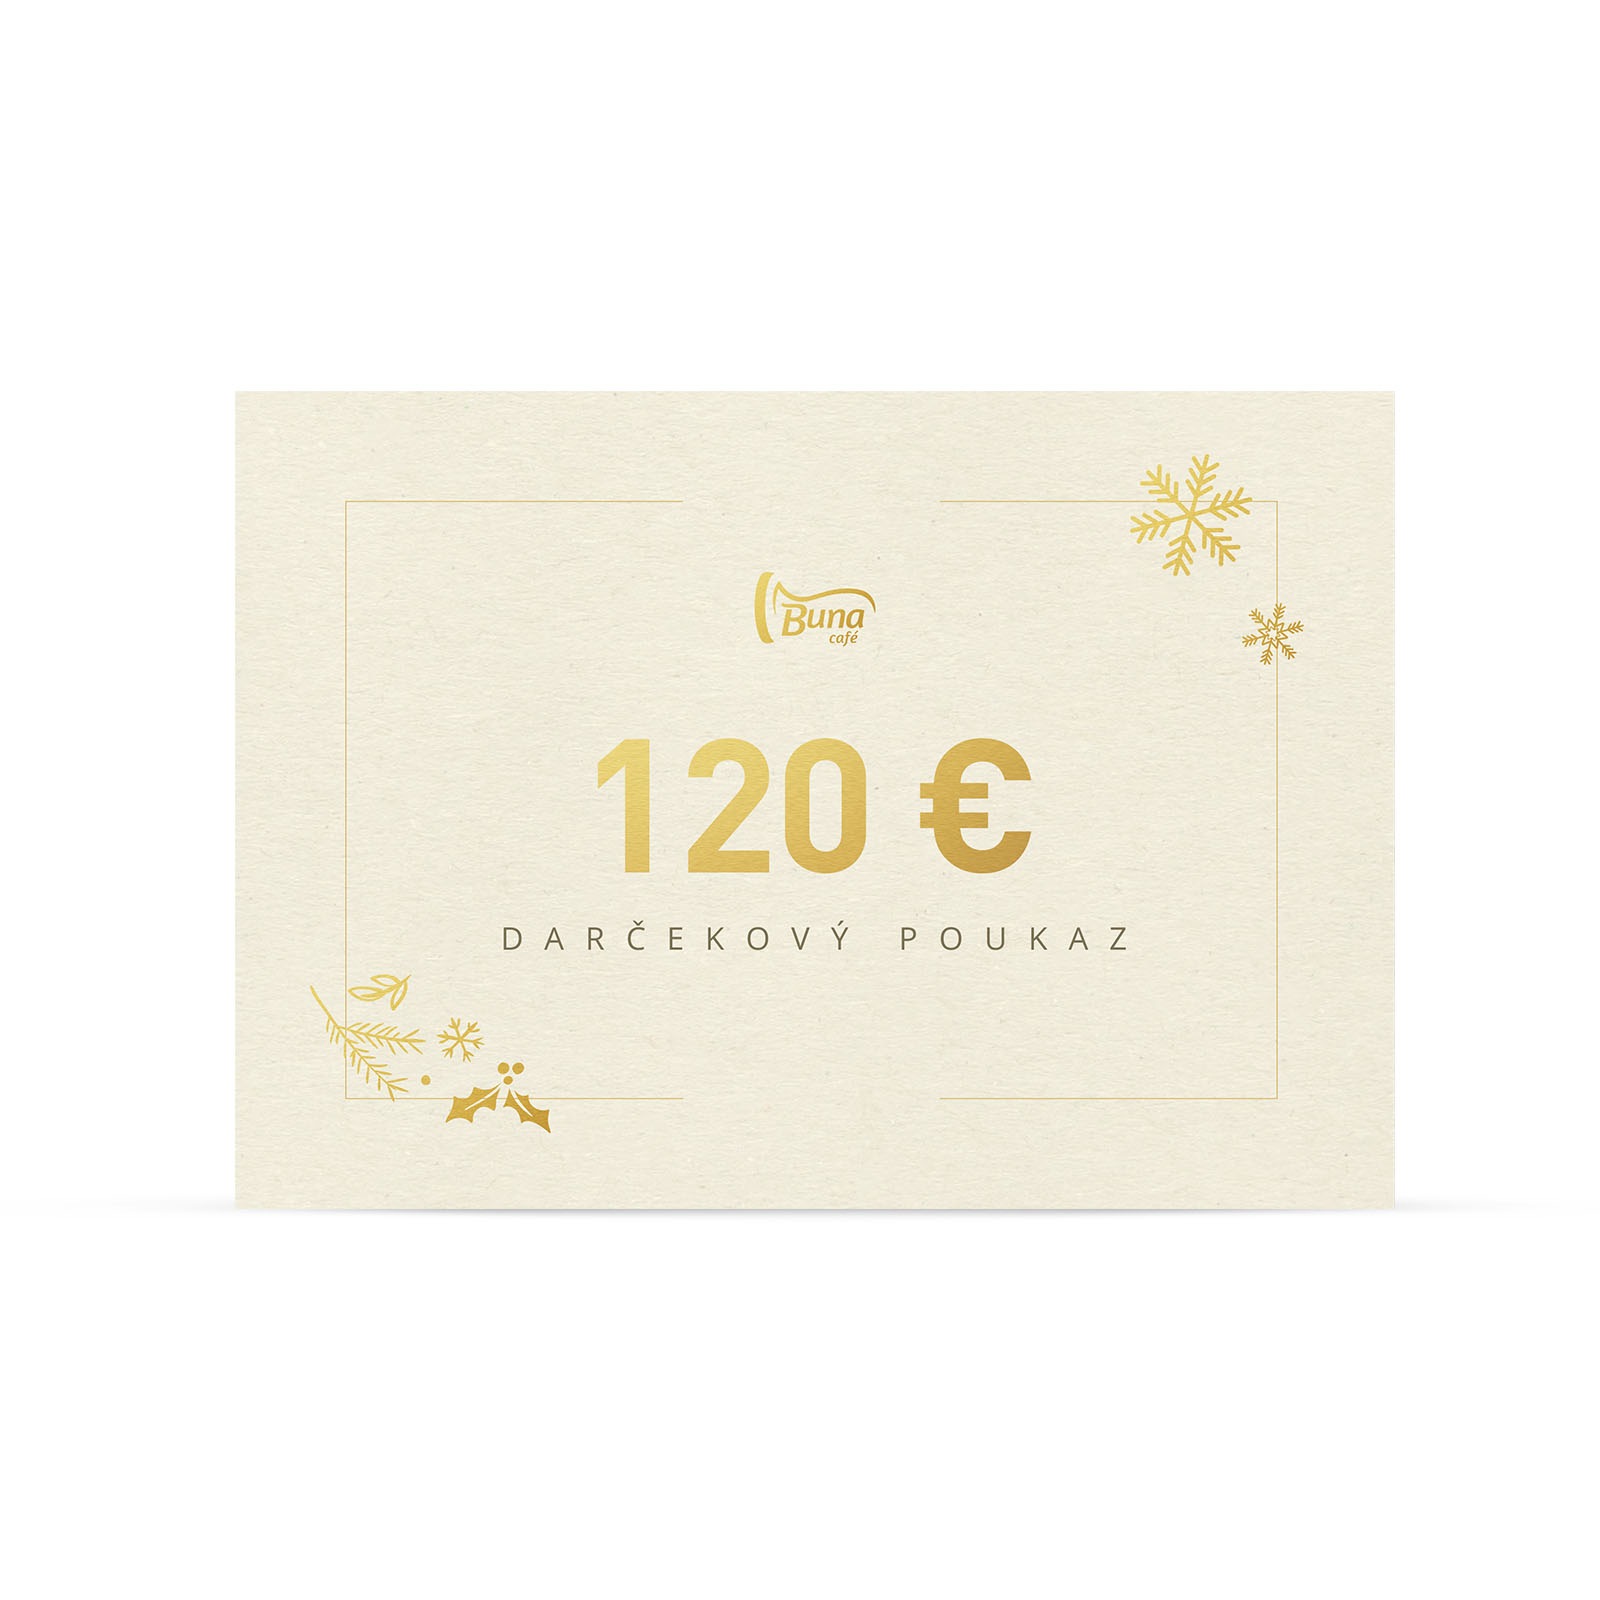 Buna café darčekový poukaz v hodnote 120 €